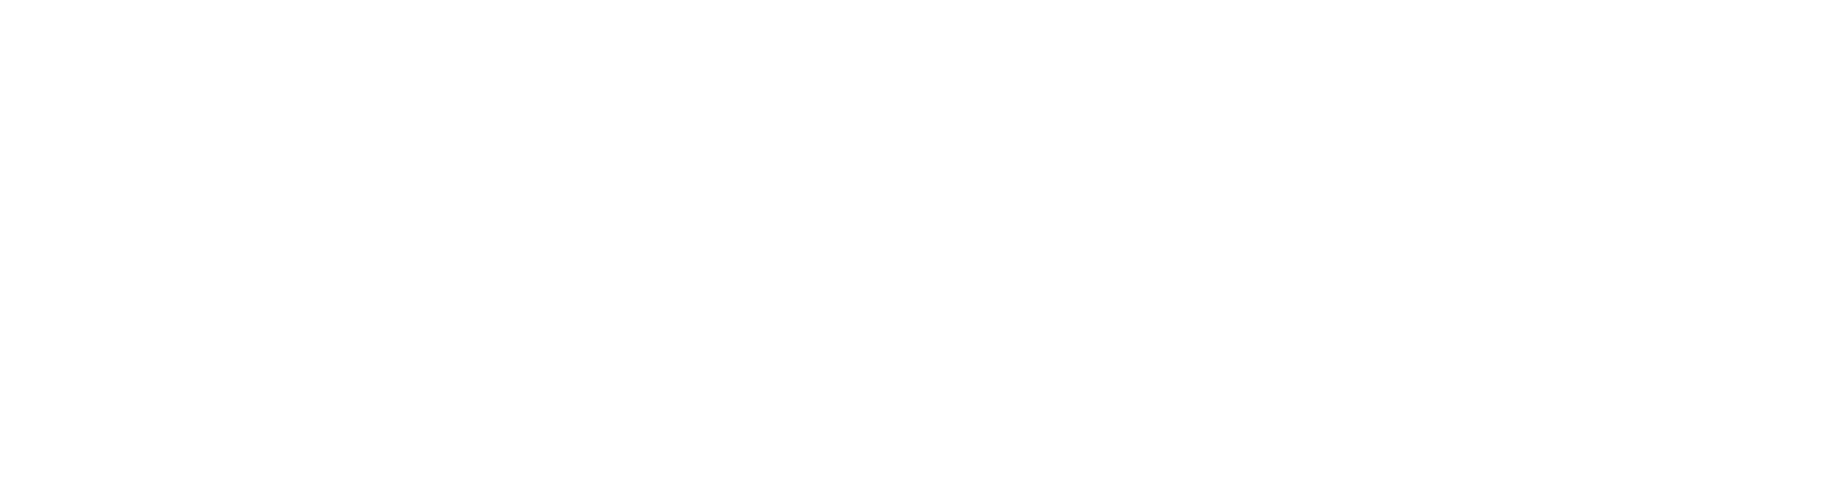 Ferro afia o movimento do ferro nos podcasts da Apple